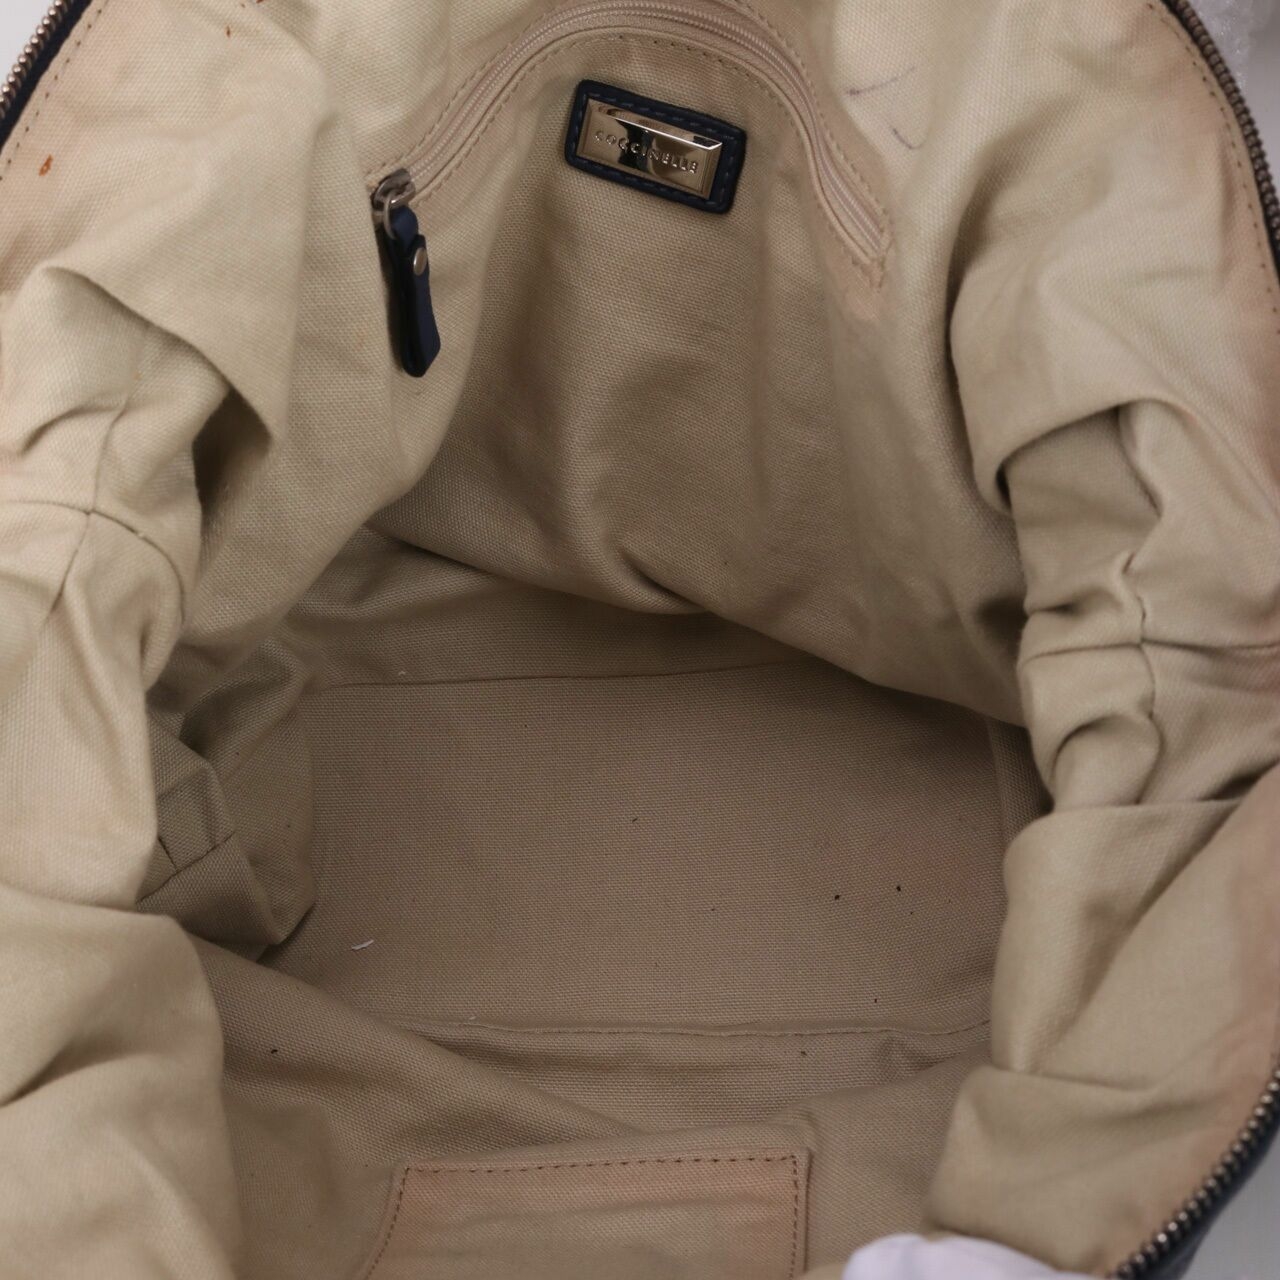 Coccinelle Navy Shoulder Bag